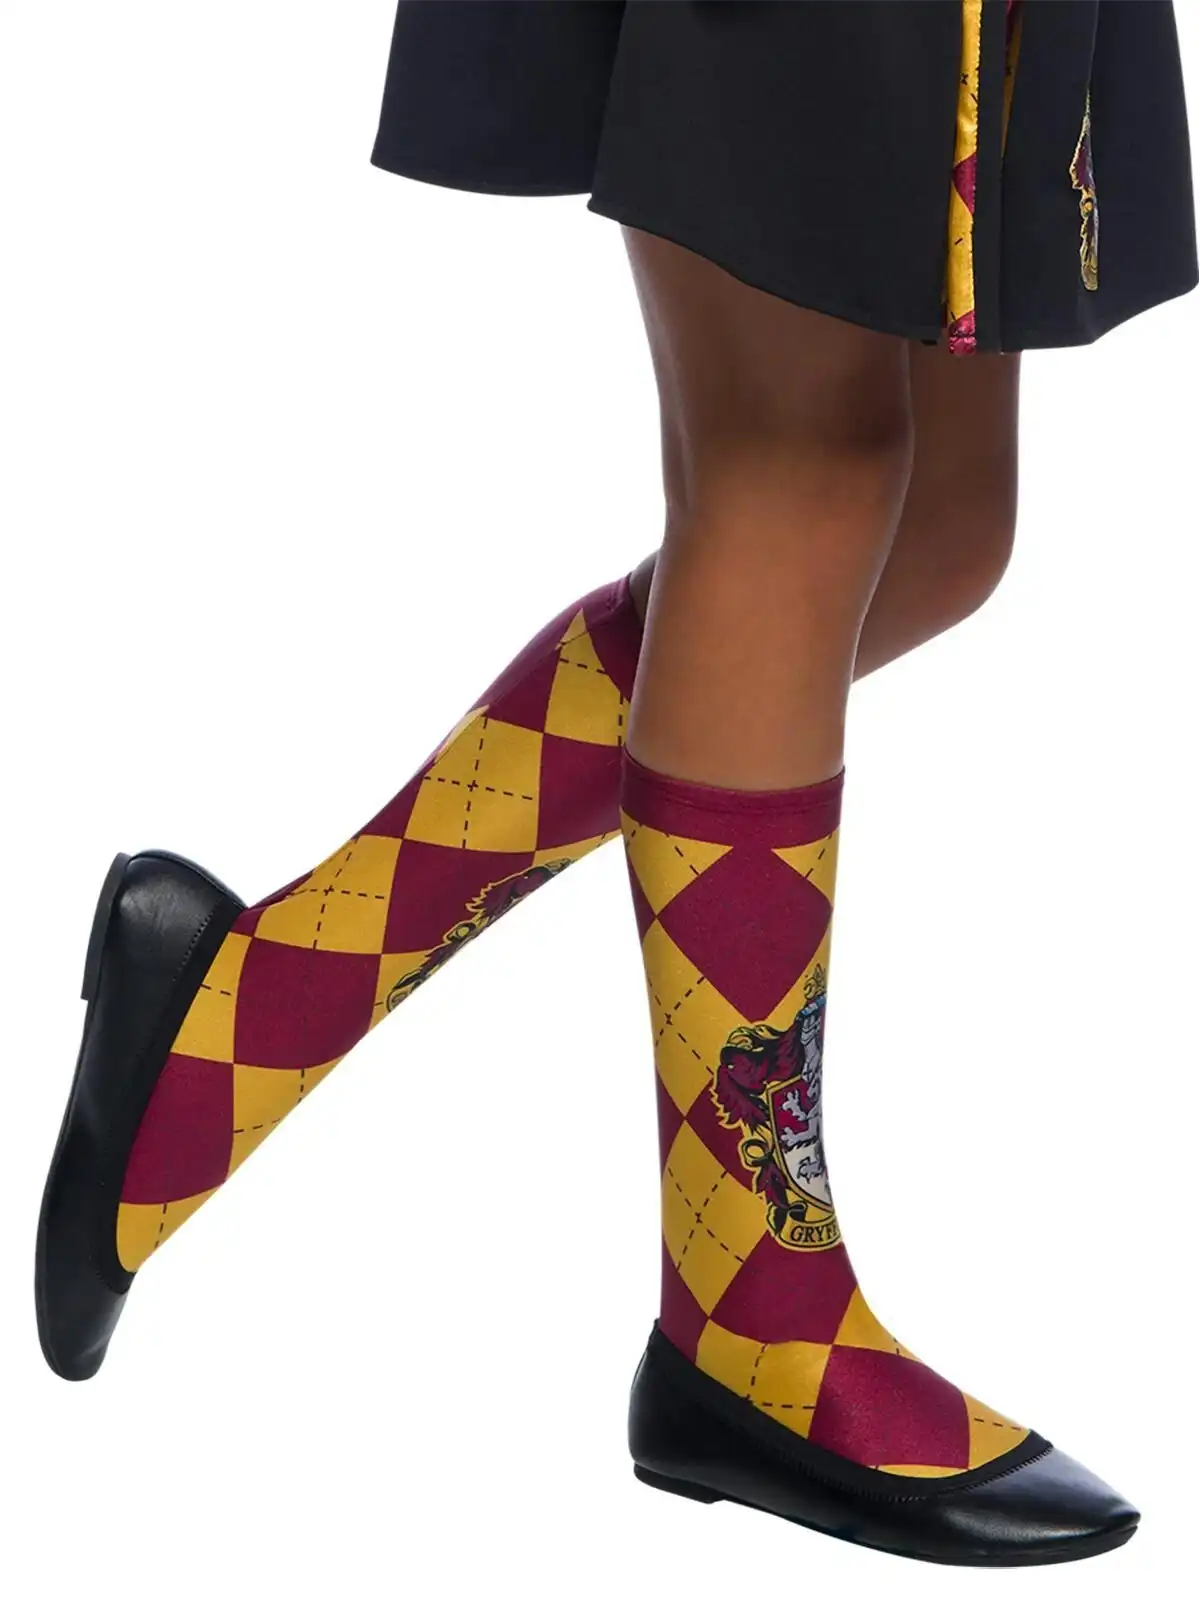 Harry Potter Gryffindor Knee High Socks Kids/Child Dress Up Party Costume 6-11